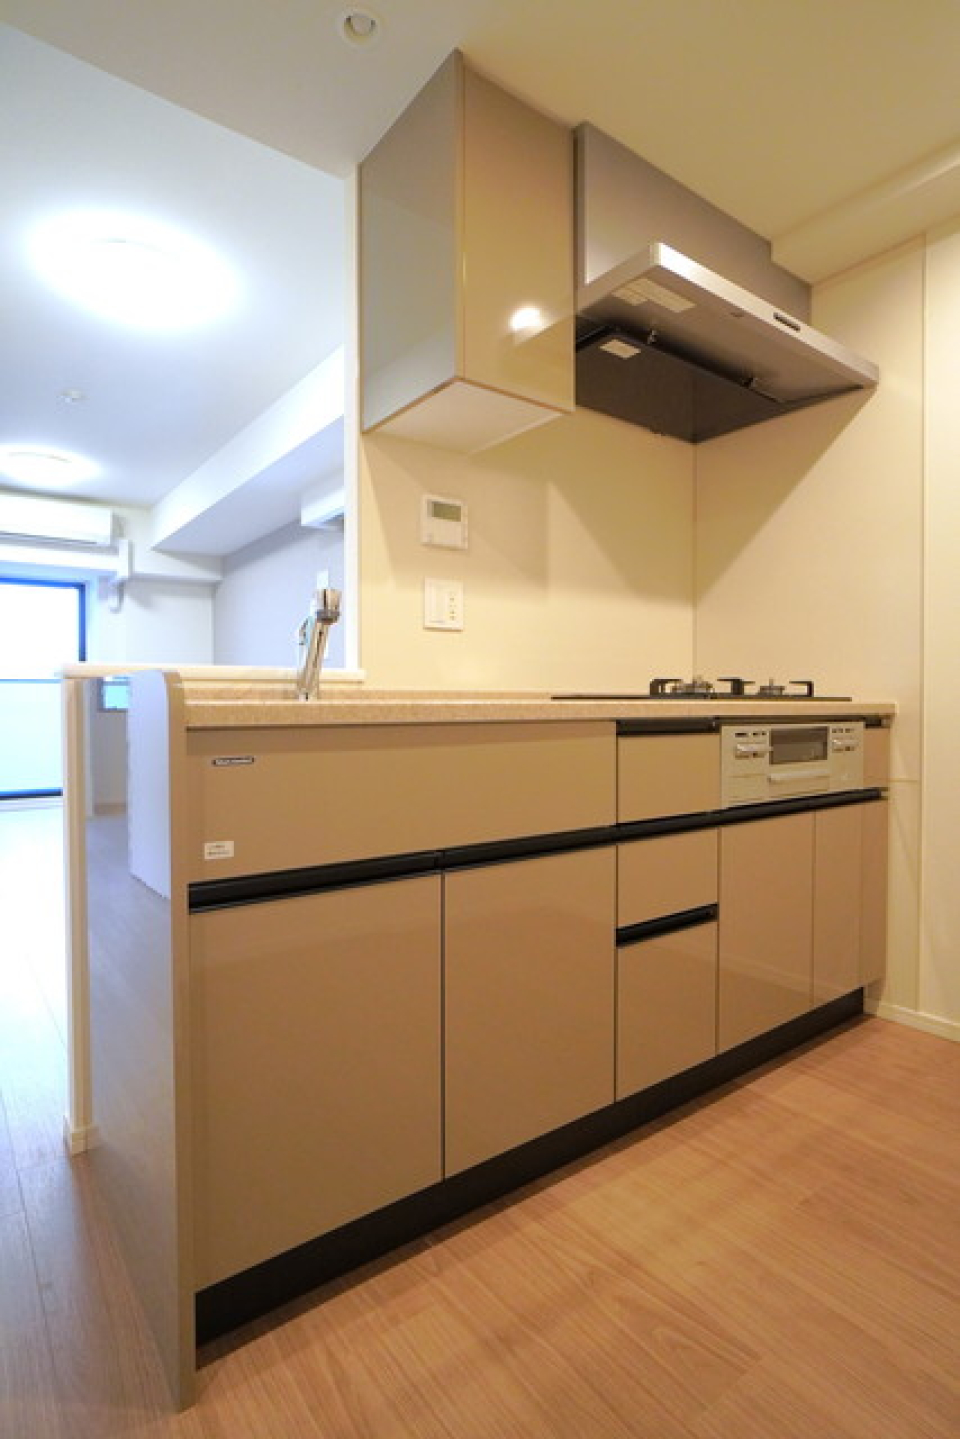 キッチンも広々としており、デザイン性・利便性に富んだスペースになっています。
※写真は同タイプ住戸です。